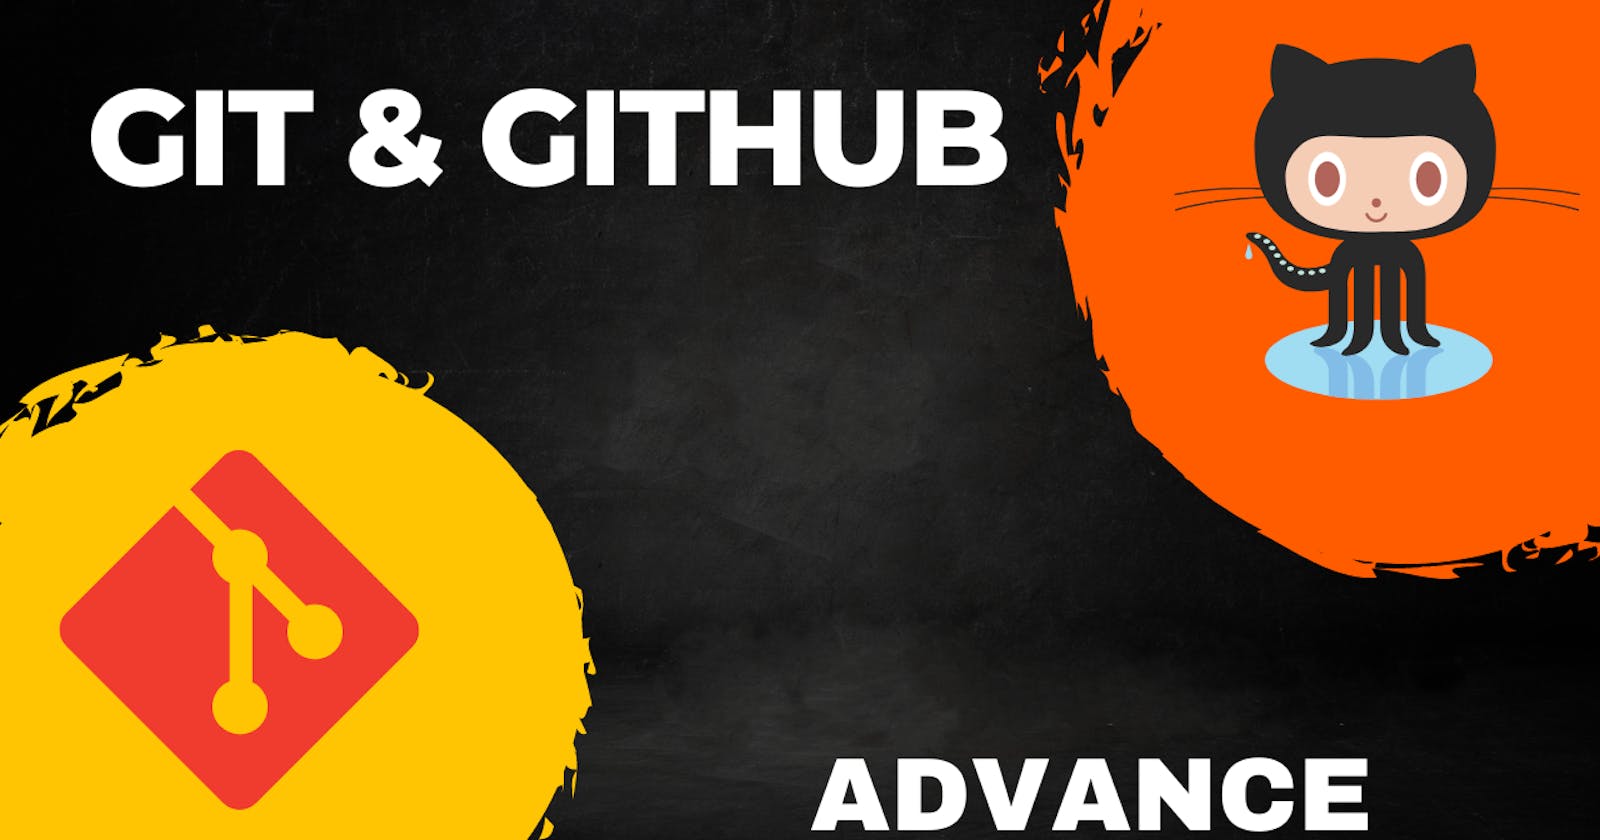 Day 10 - Advance Git & GitHub for DevOps Engineers.